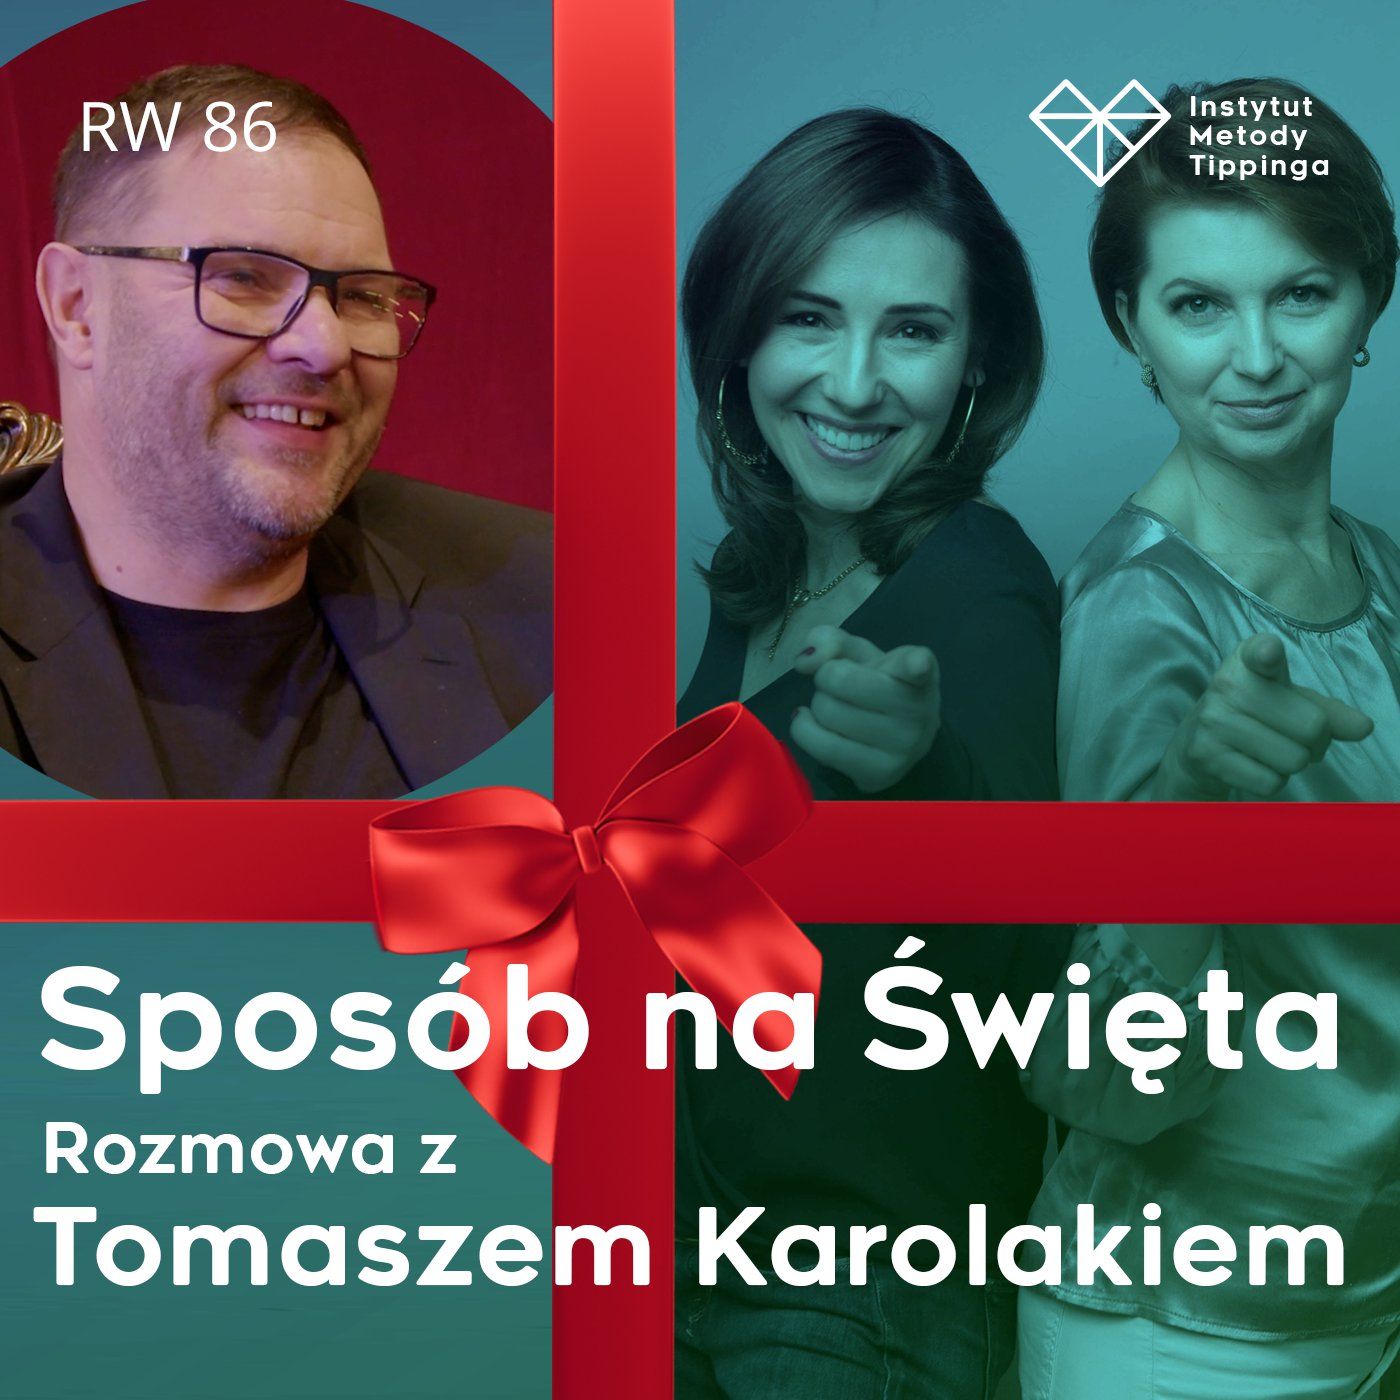 RW 86:  "Sposób na Święta". Odcinek świąteczny na deskach Teatru IMKA z Tomaszem Karolakiem!